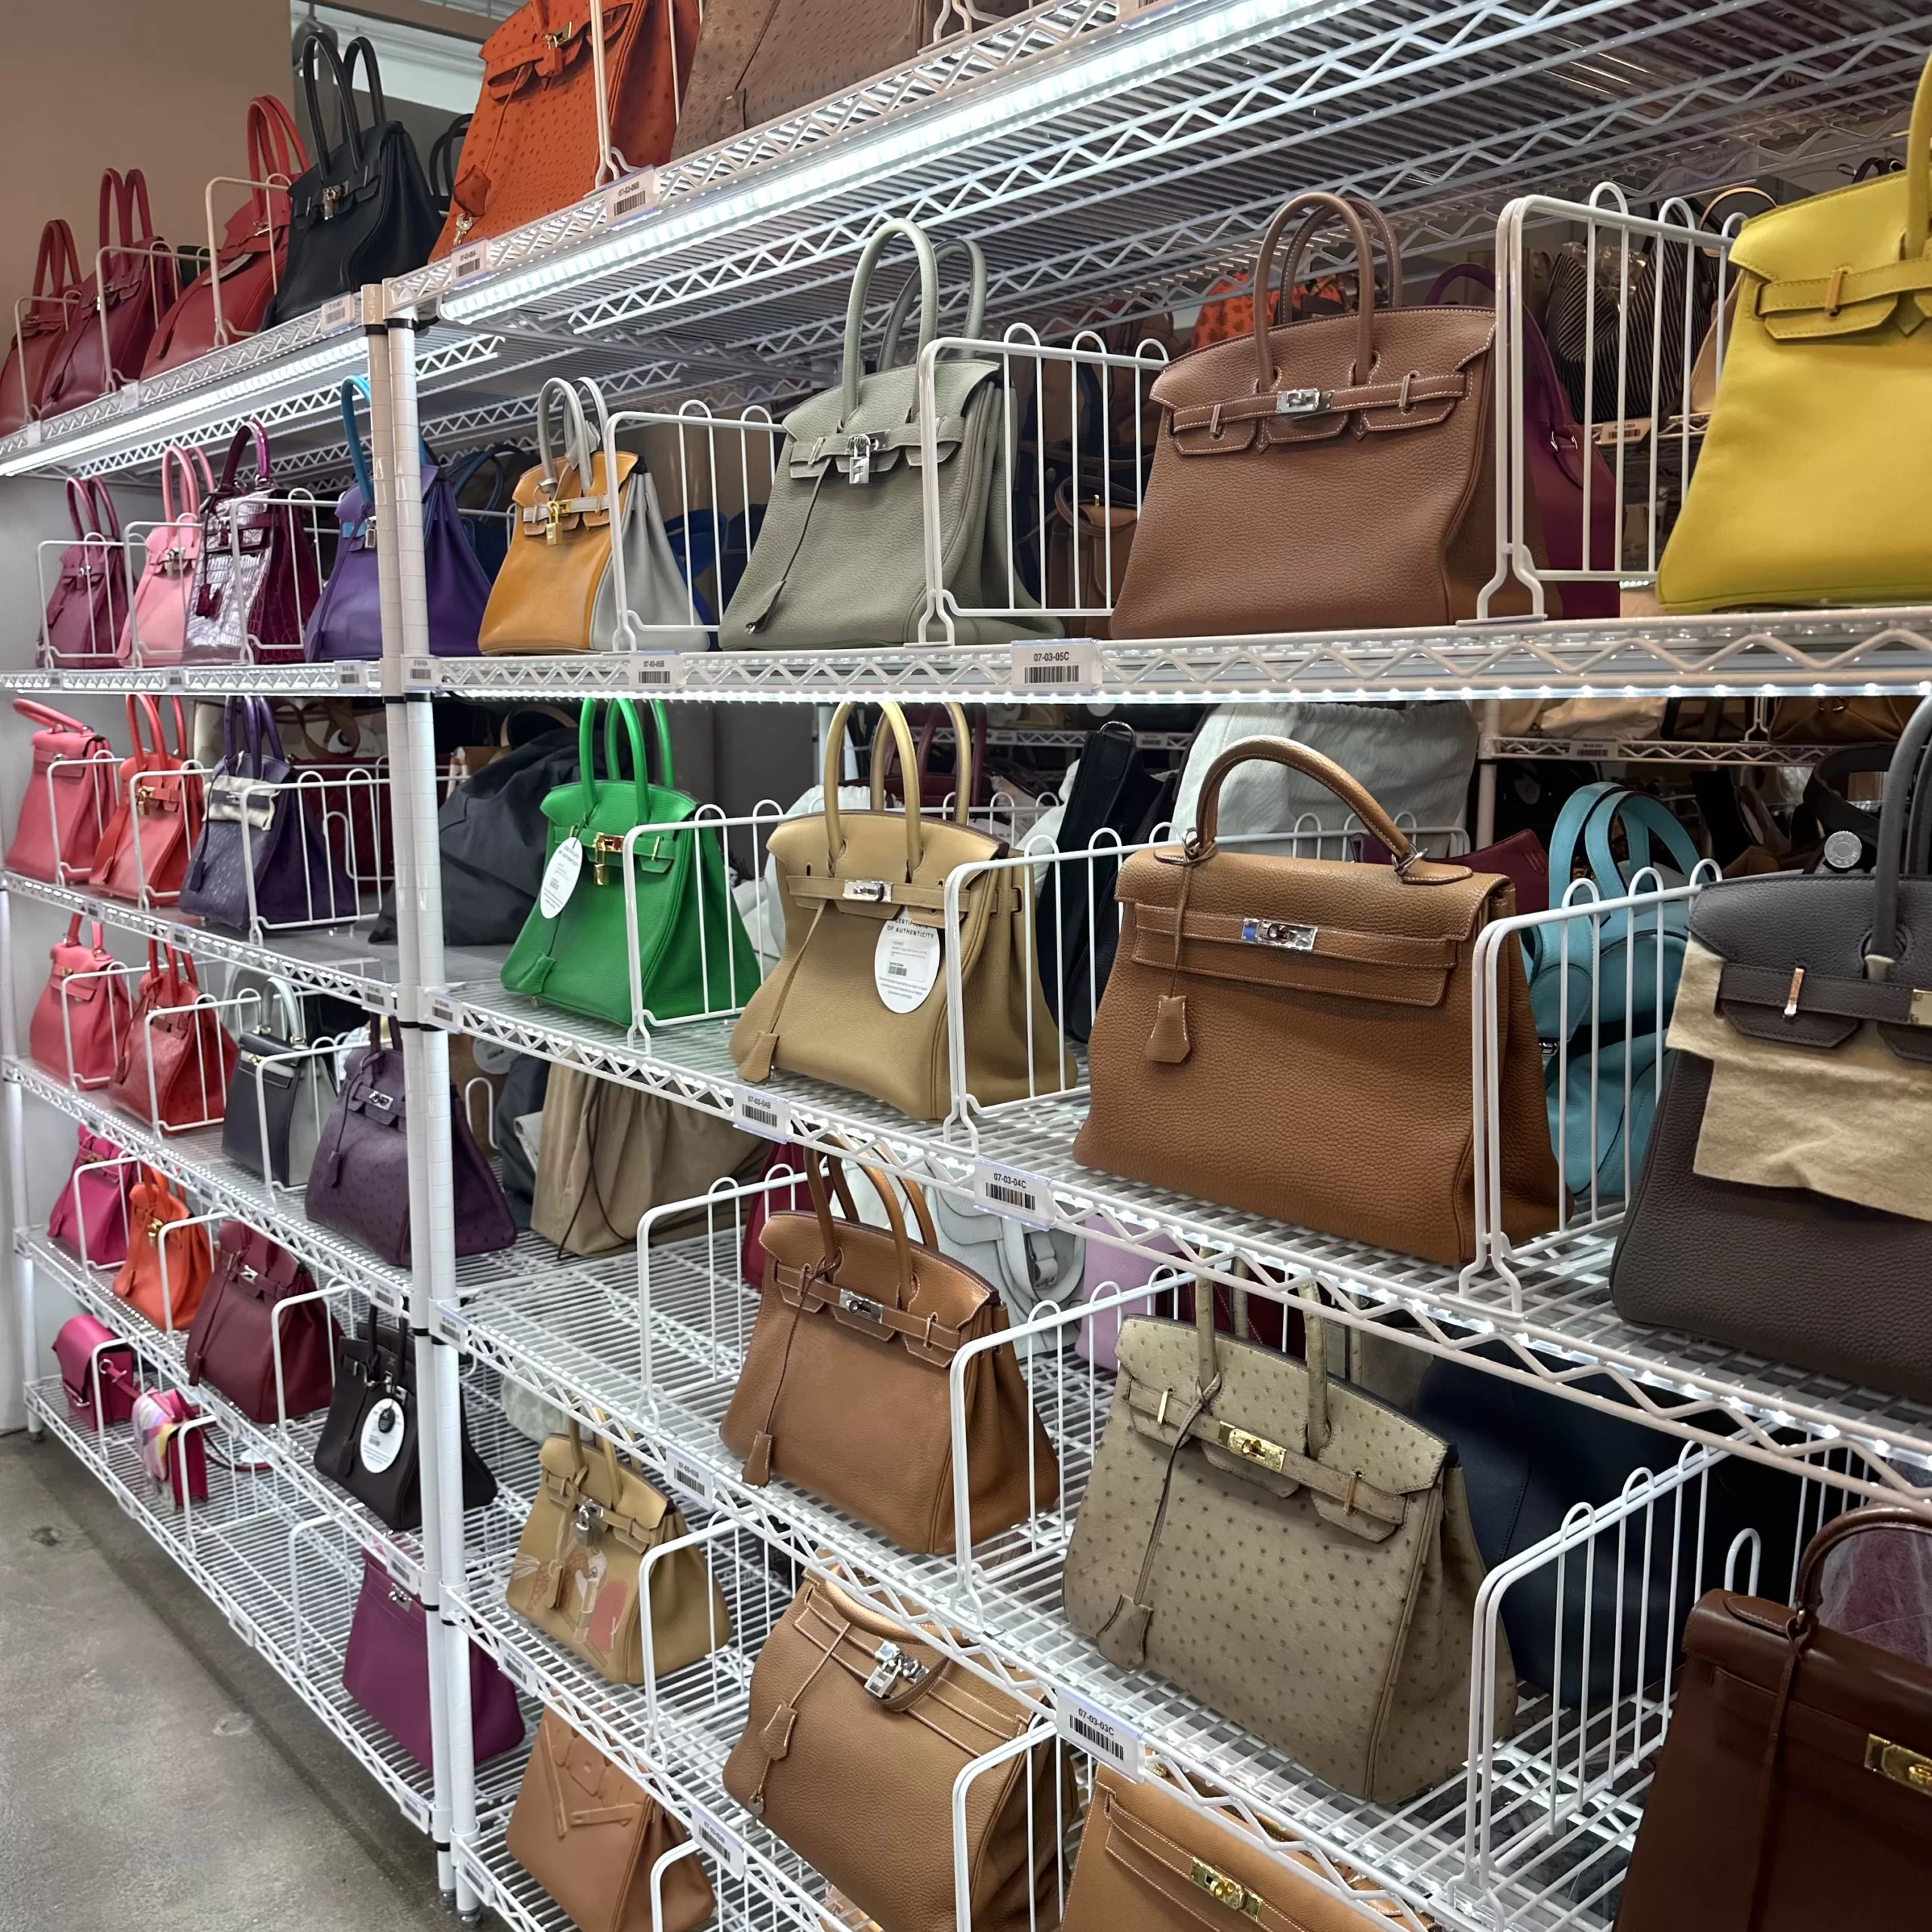 Louis Vuitton Handbags, Shop Authentic LV Resale